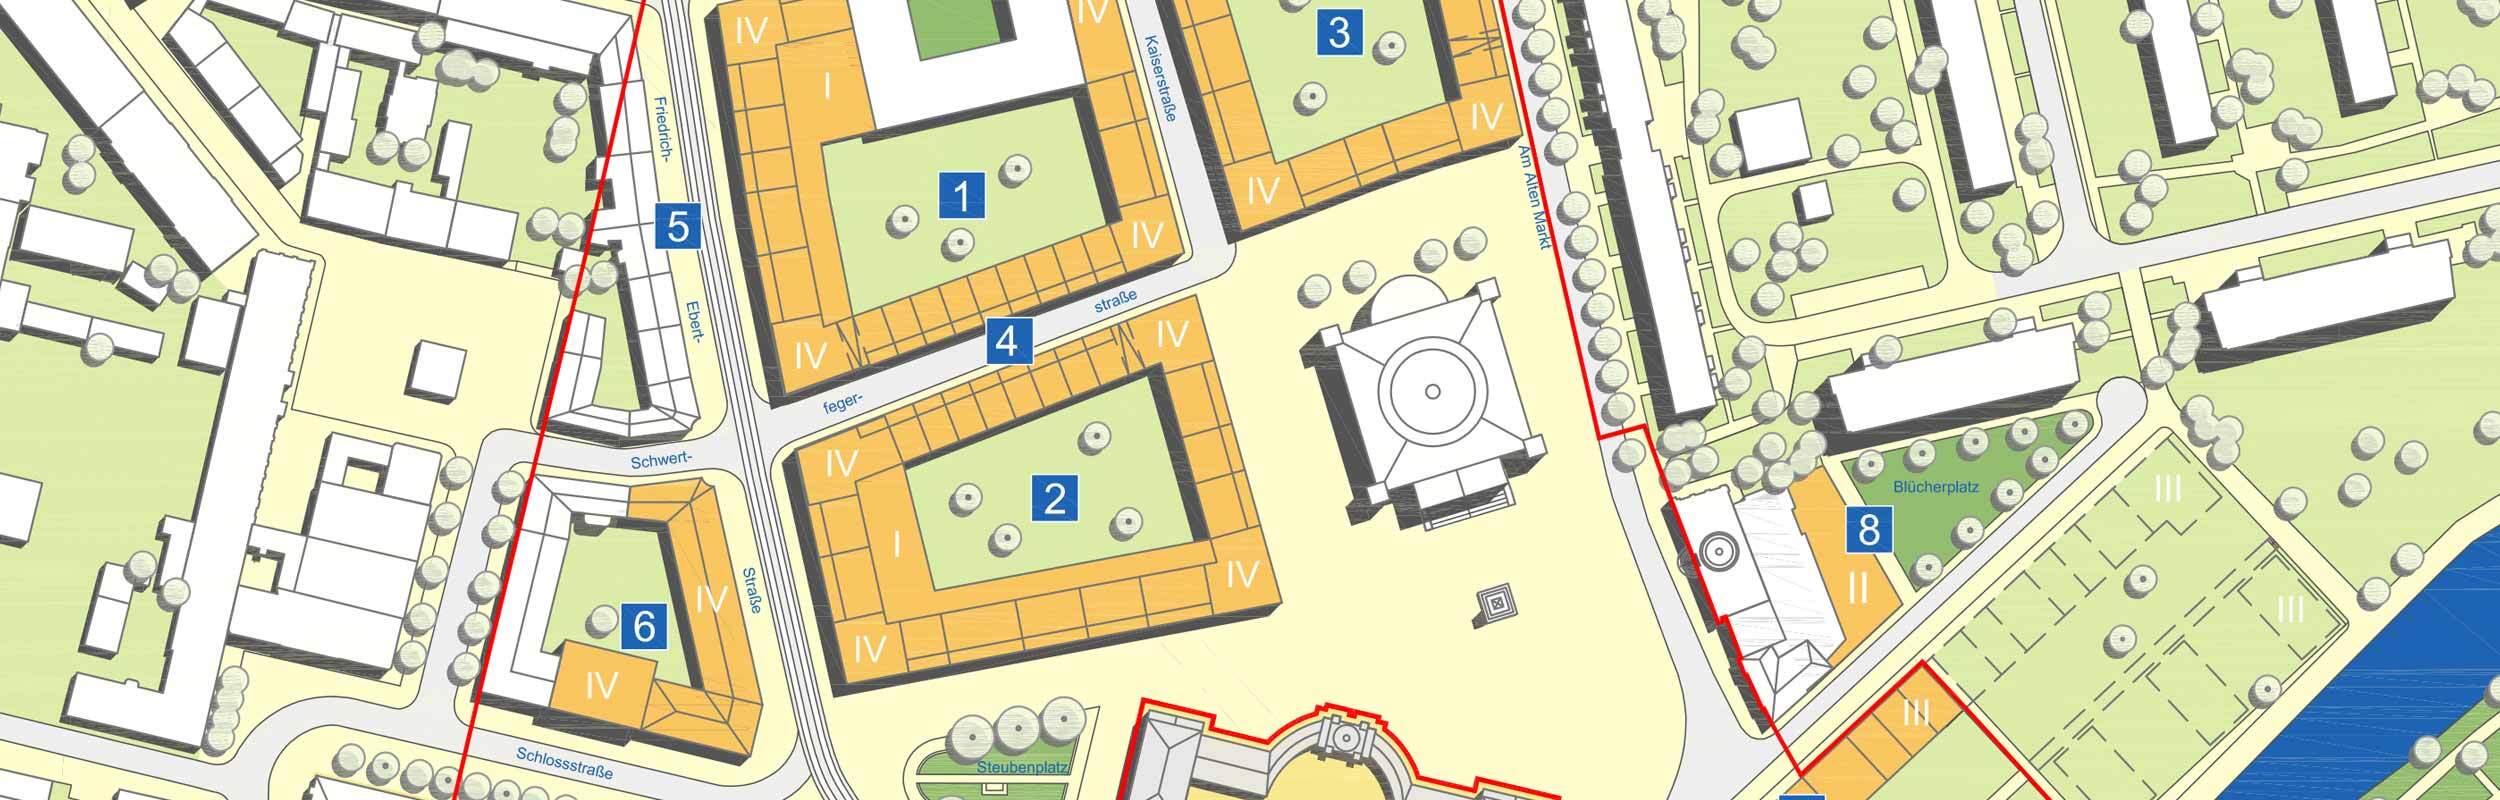 Karte: Darstellung der städtebaulichen Entwicklung der Potsdamer Mitte mit 5 Teil-Bereichen rund um den Alten Markt